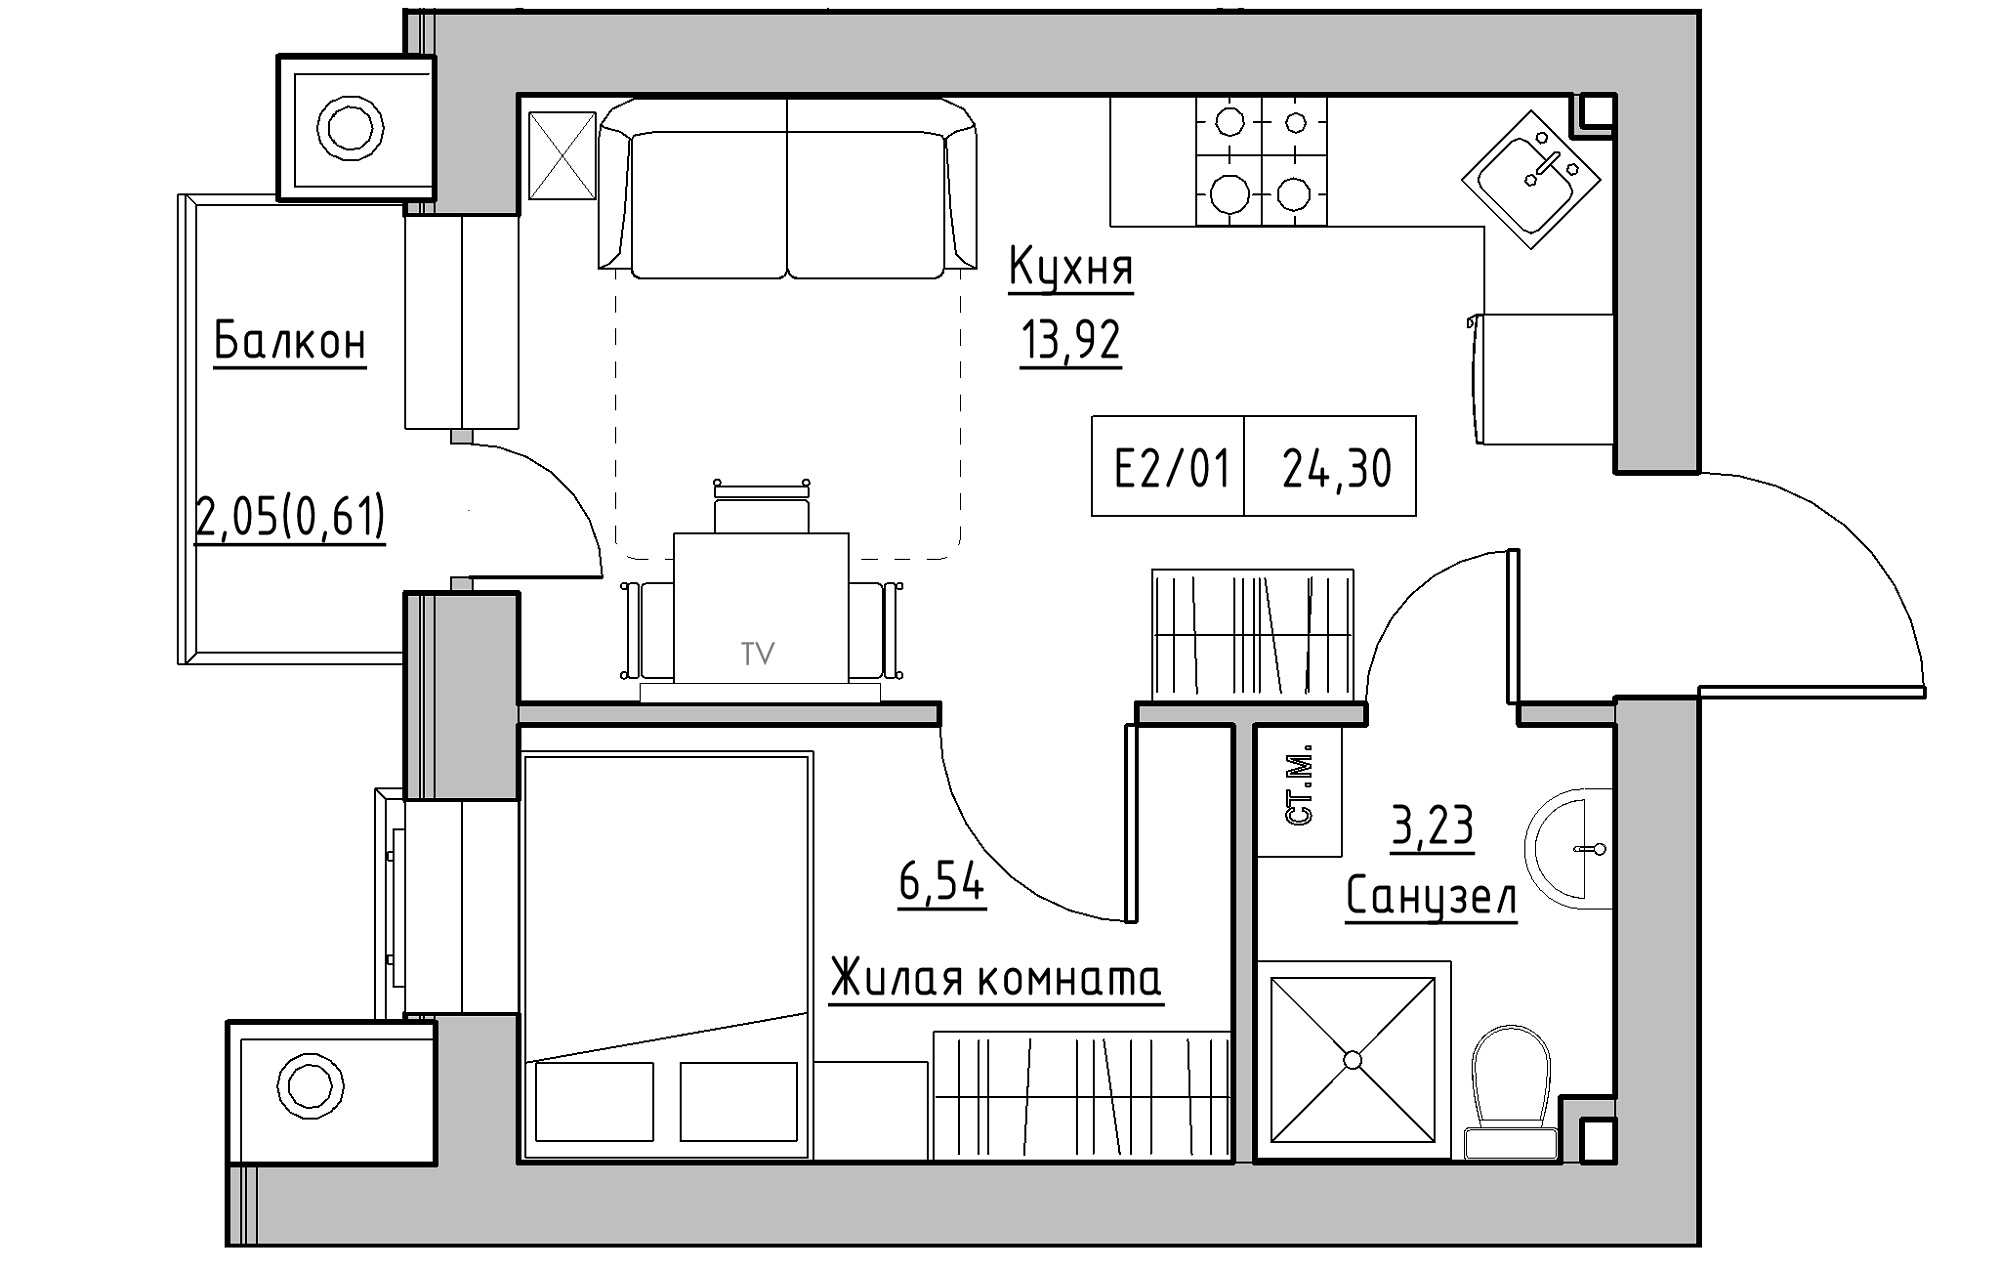 Планування 1-к квартира площею 24.3м2, KS-013-04/0005.